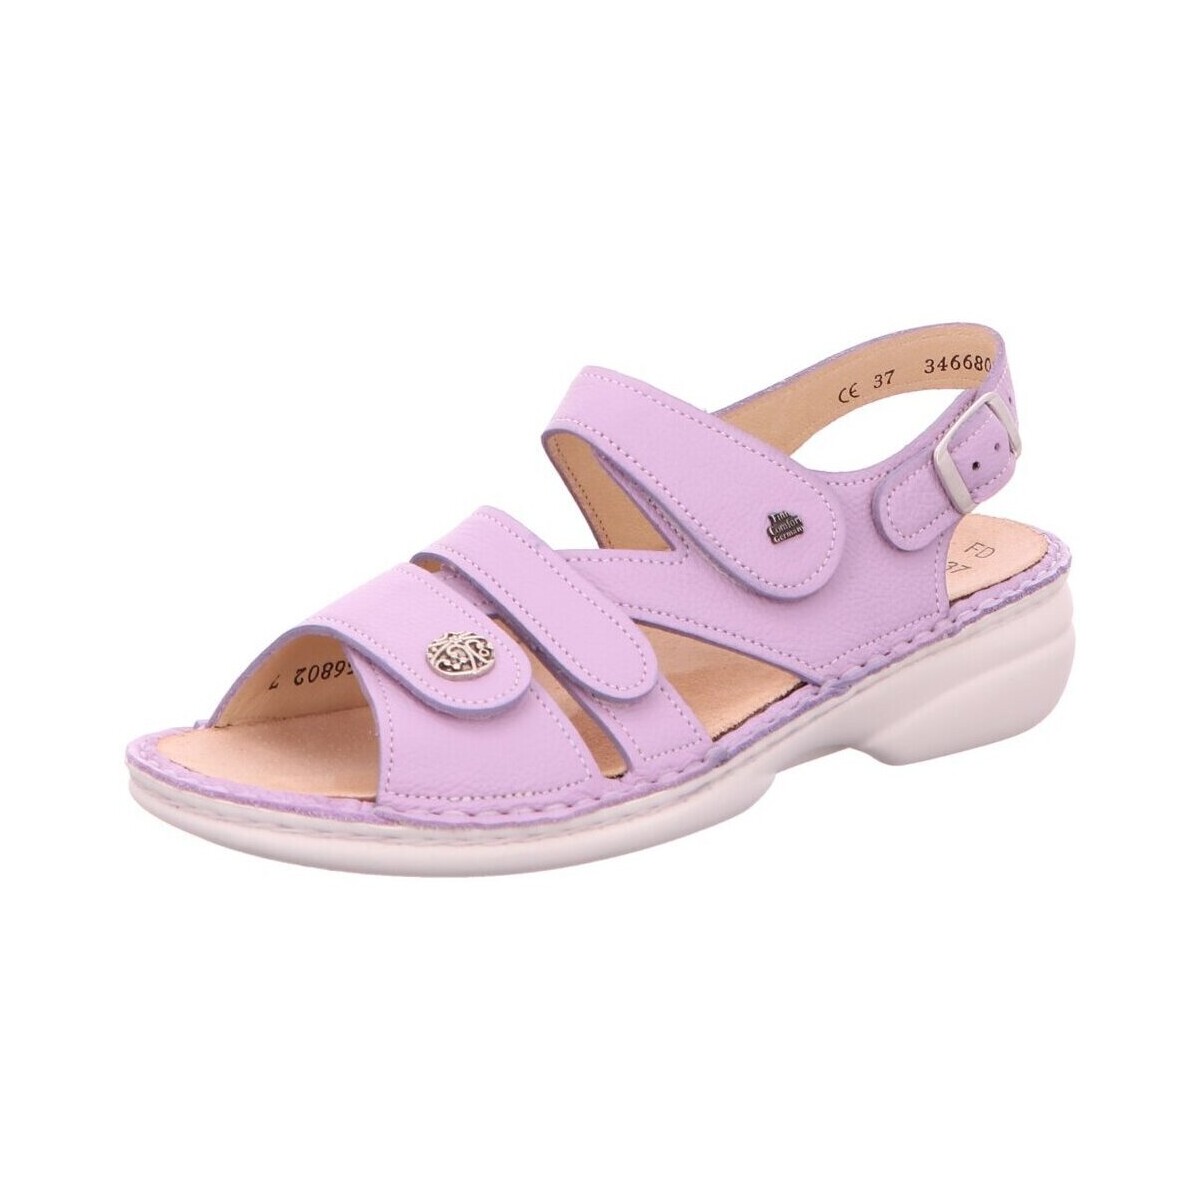 Schoenen Dames Sandalen / Open schoenen Finn Comfort  Violet